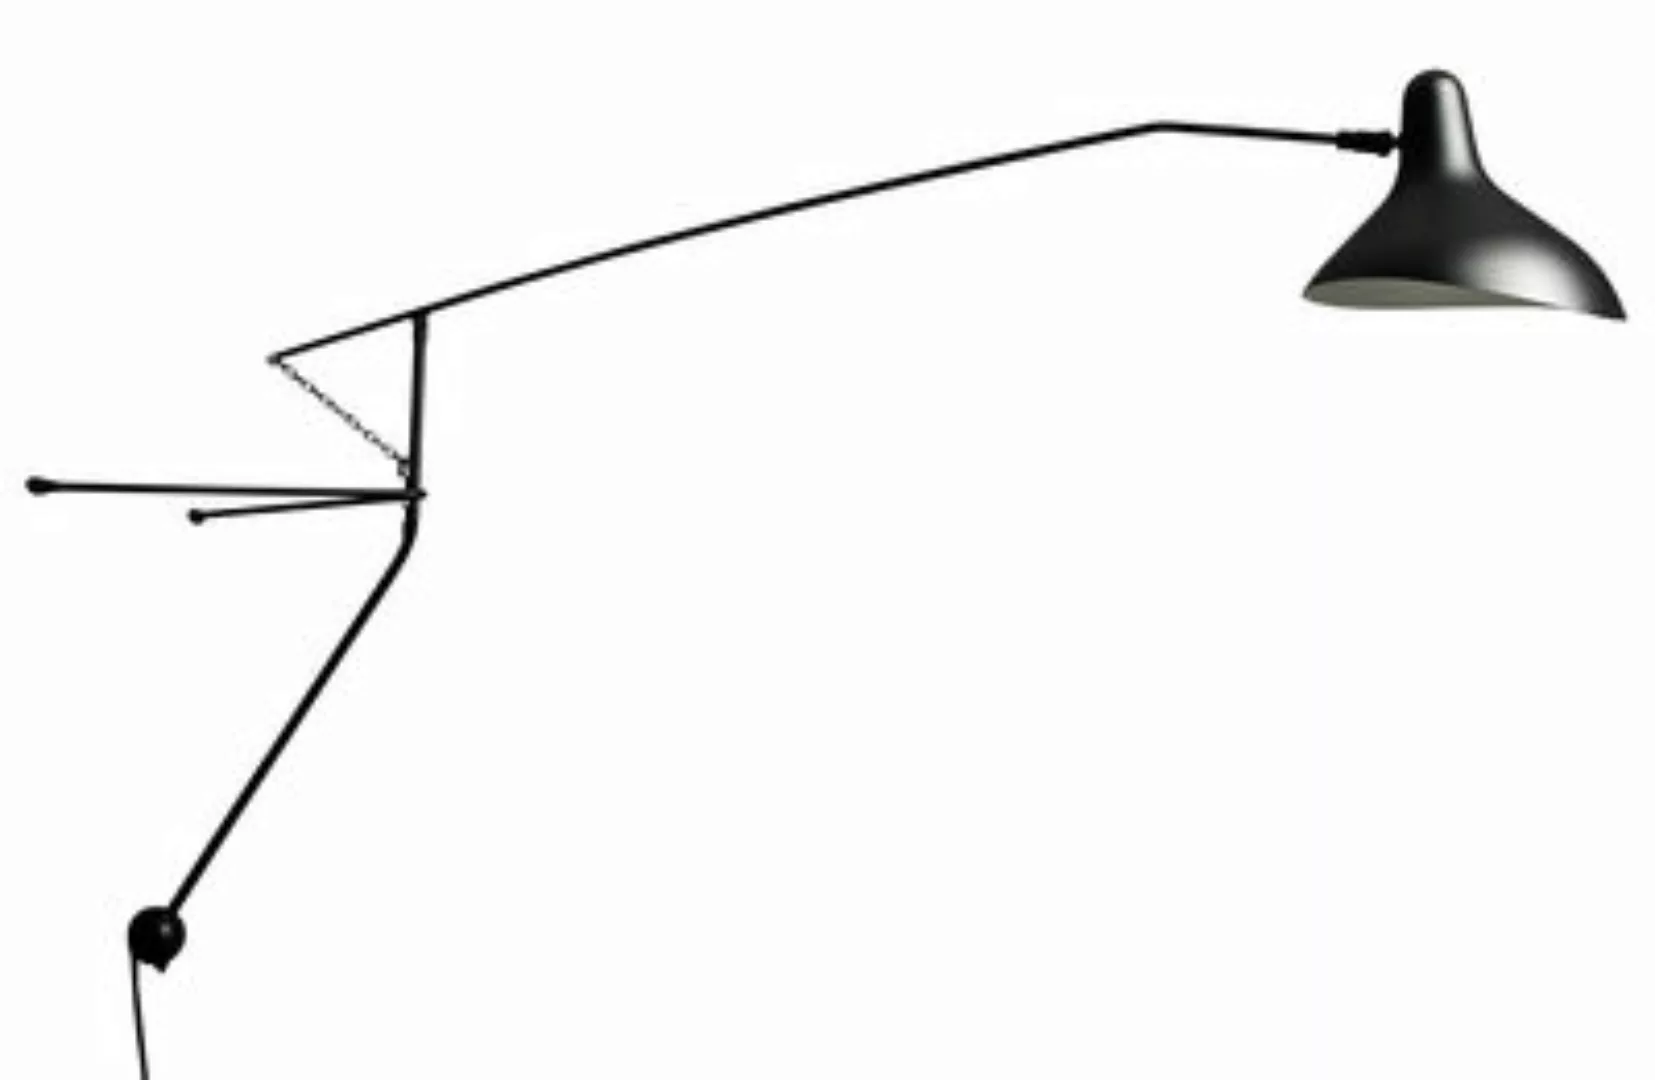 Wandleuchte Mantis BS2 metall schwarz / L 153 cm - Neuauflage des Originals günstig online kaufen